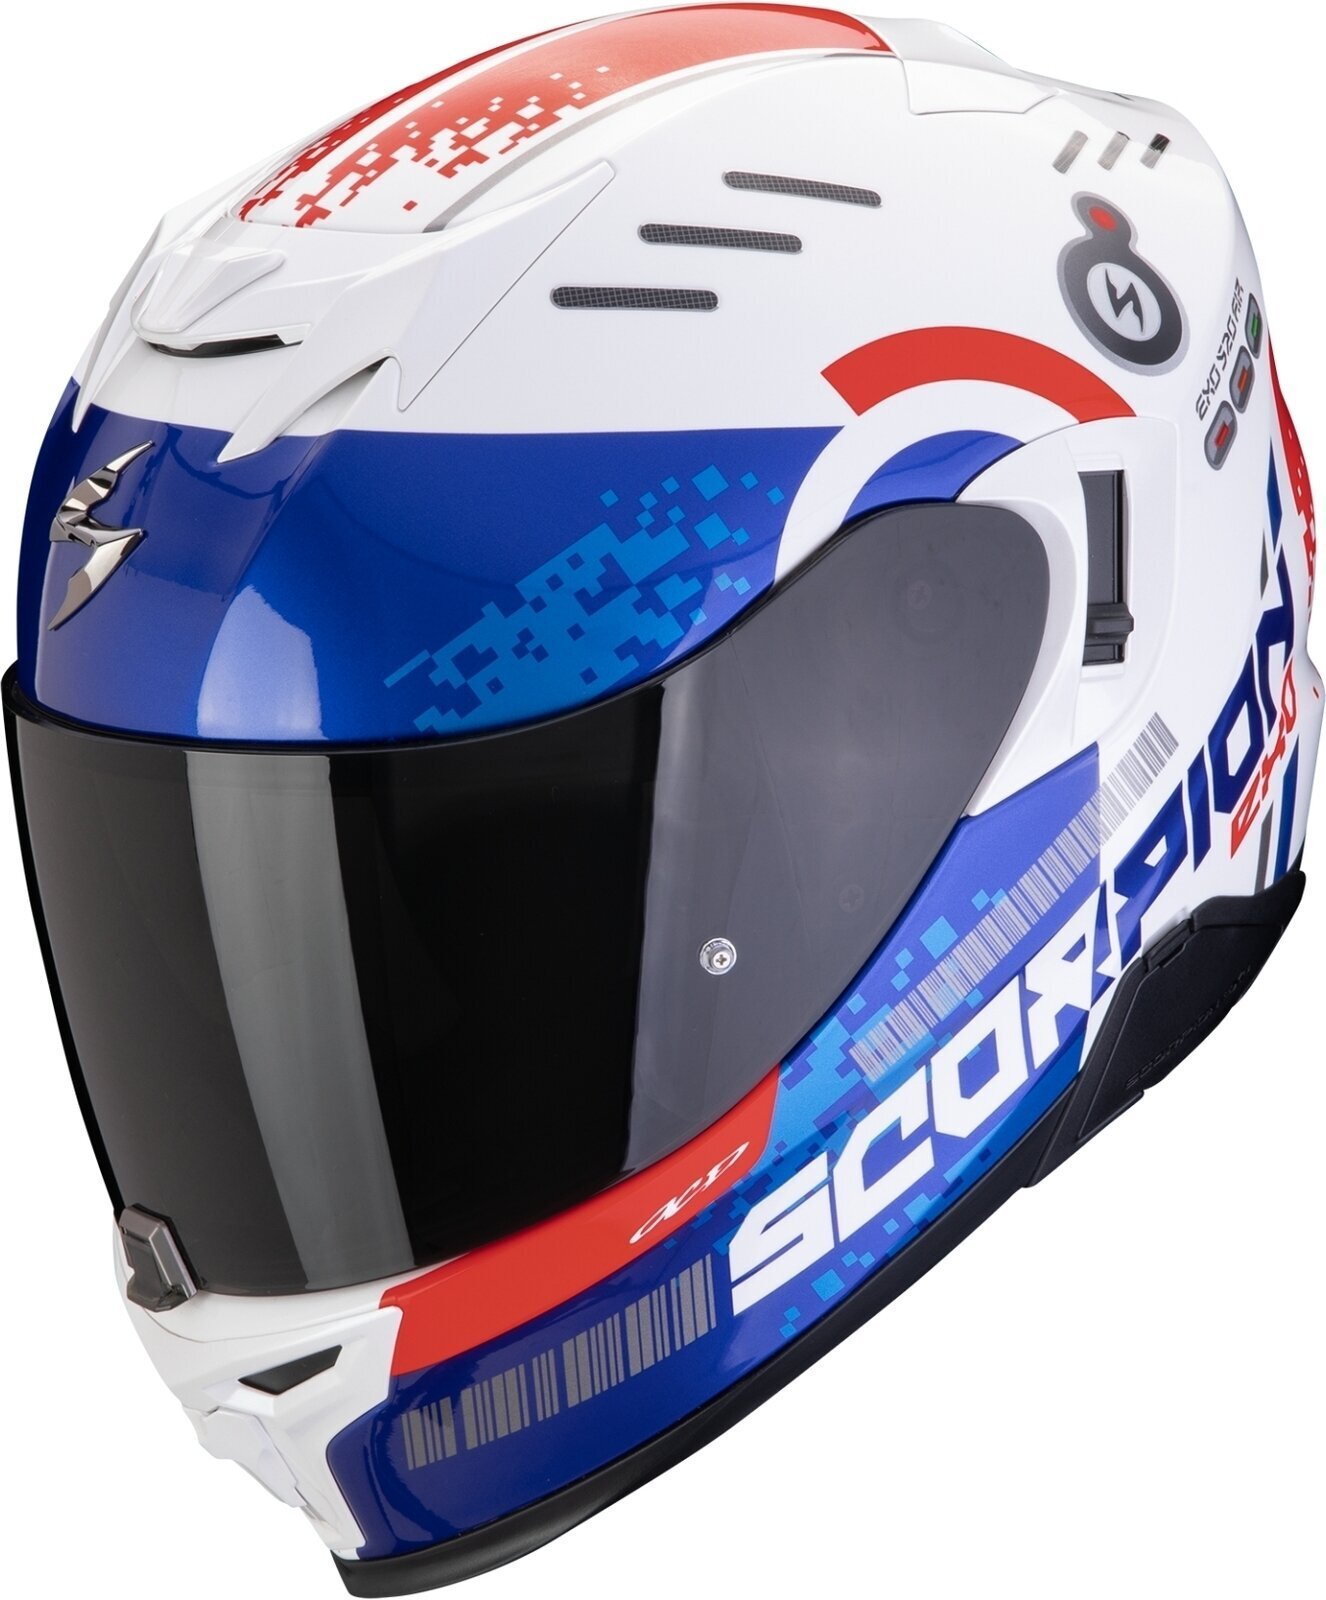 Helm Scorpion EXO 520 EVO AIR TITAN White/Blue/Red XL Helm